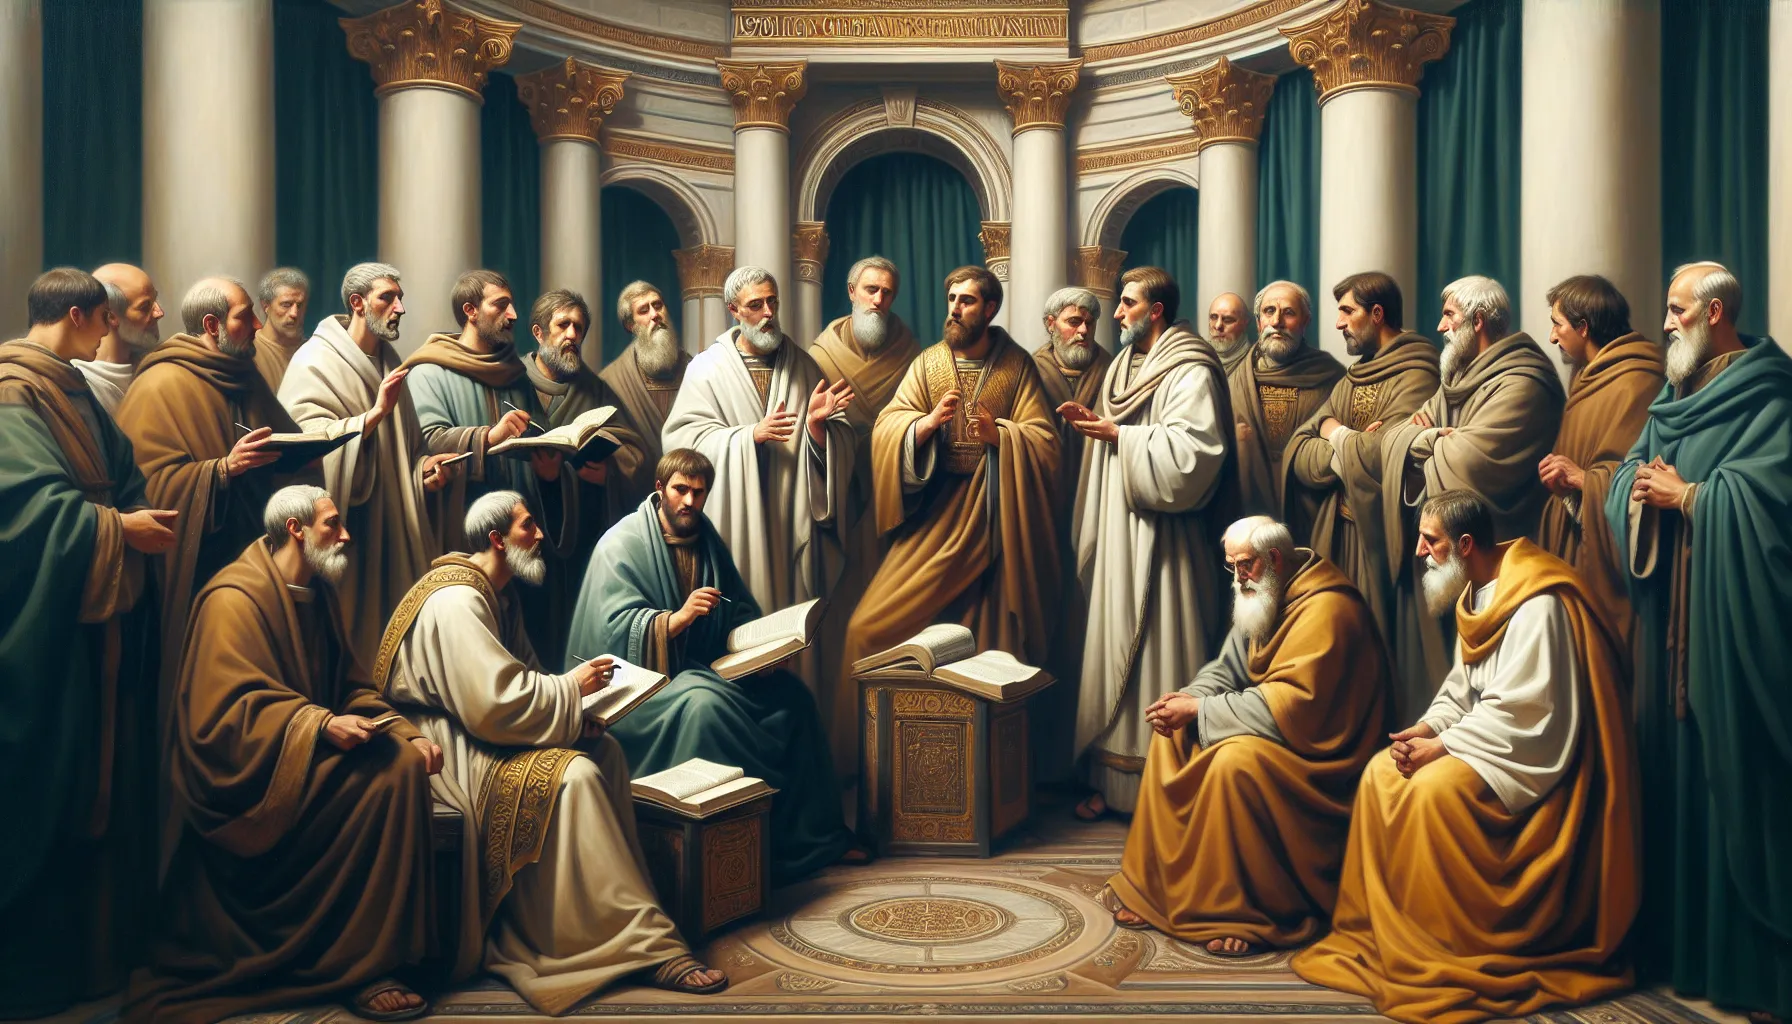 Imagen que representa a los Padres Apostólicos del cristianismo